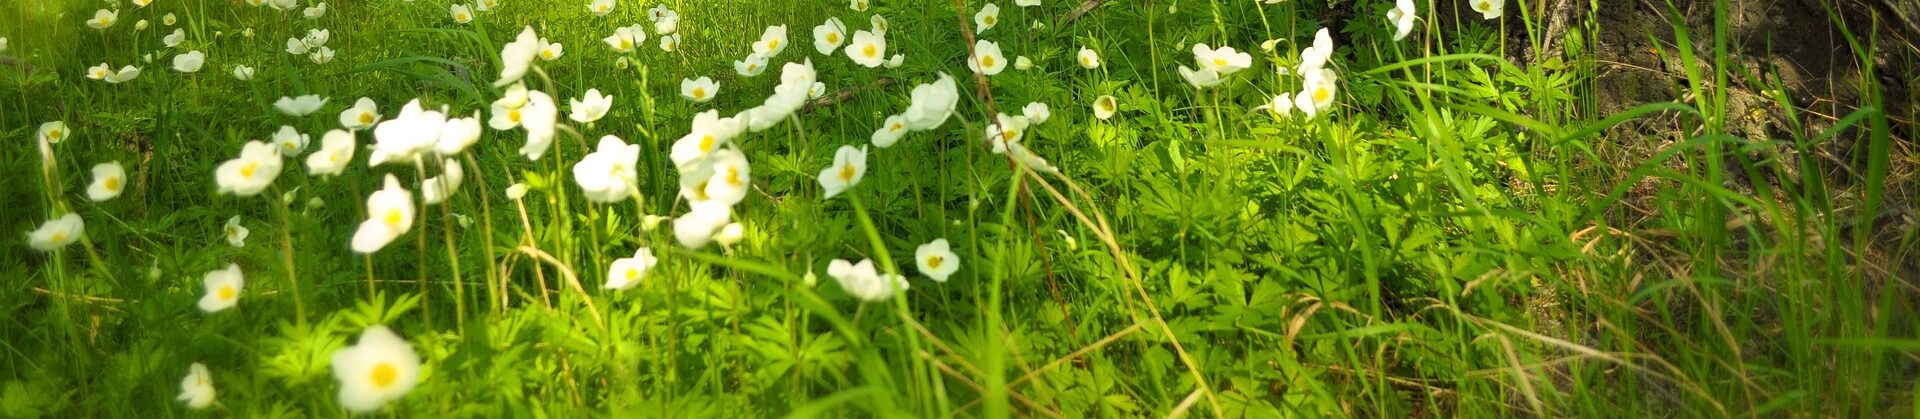 flowers-grass